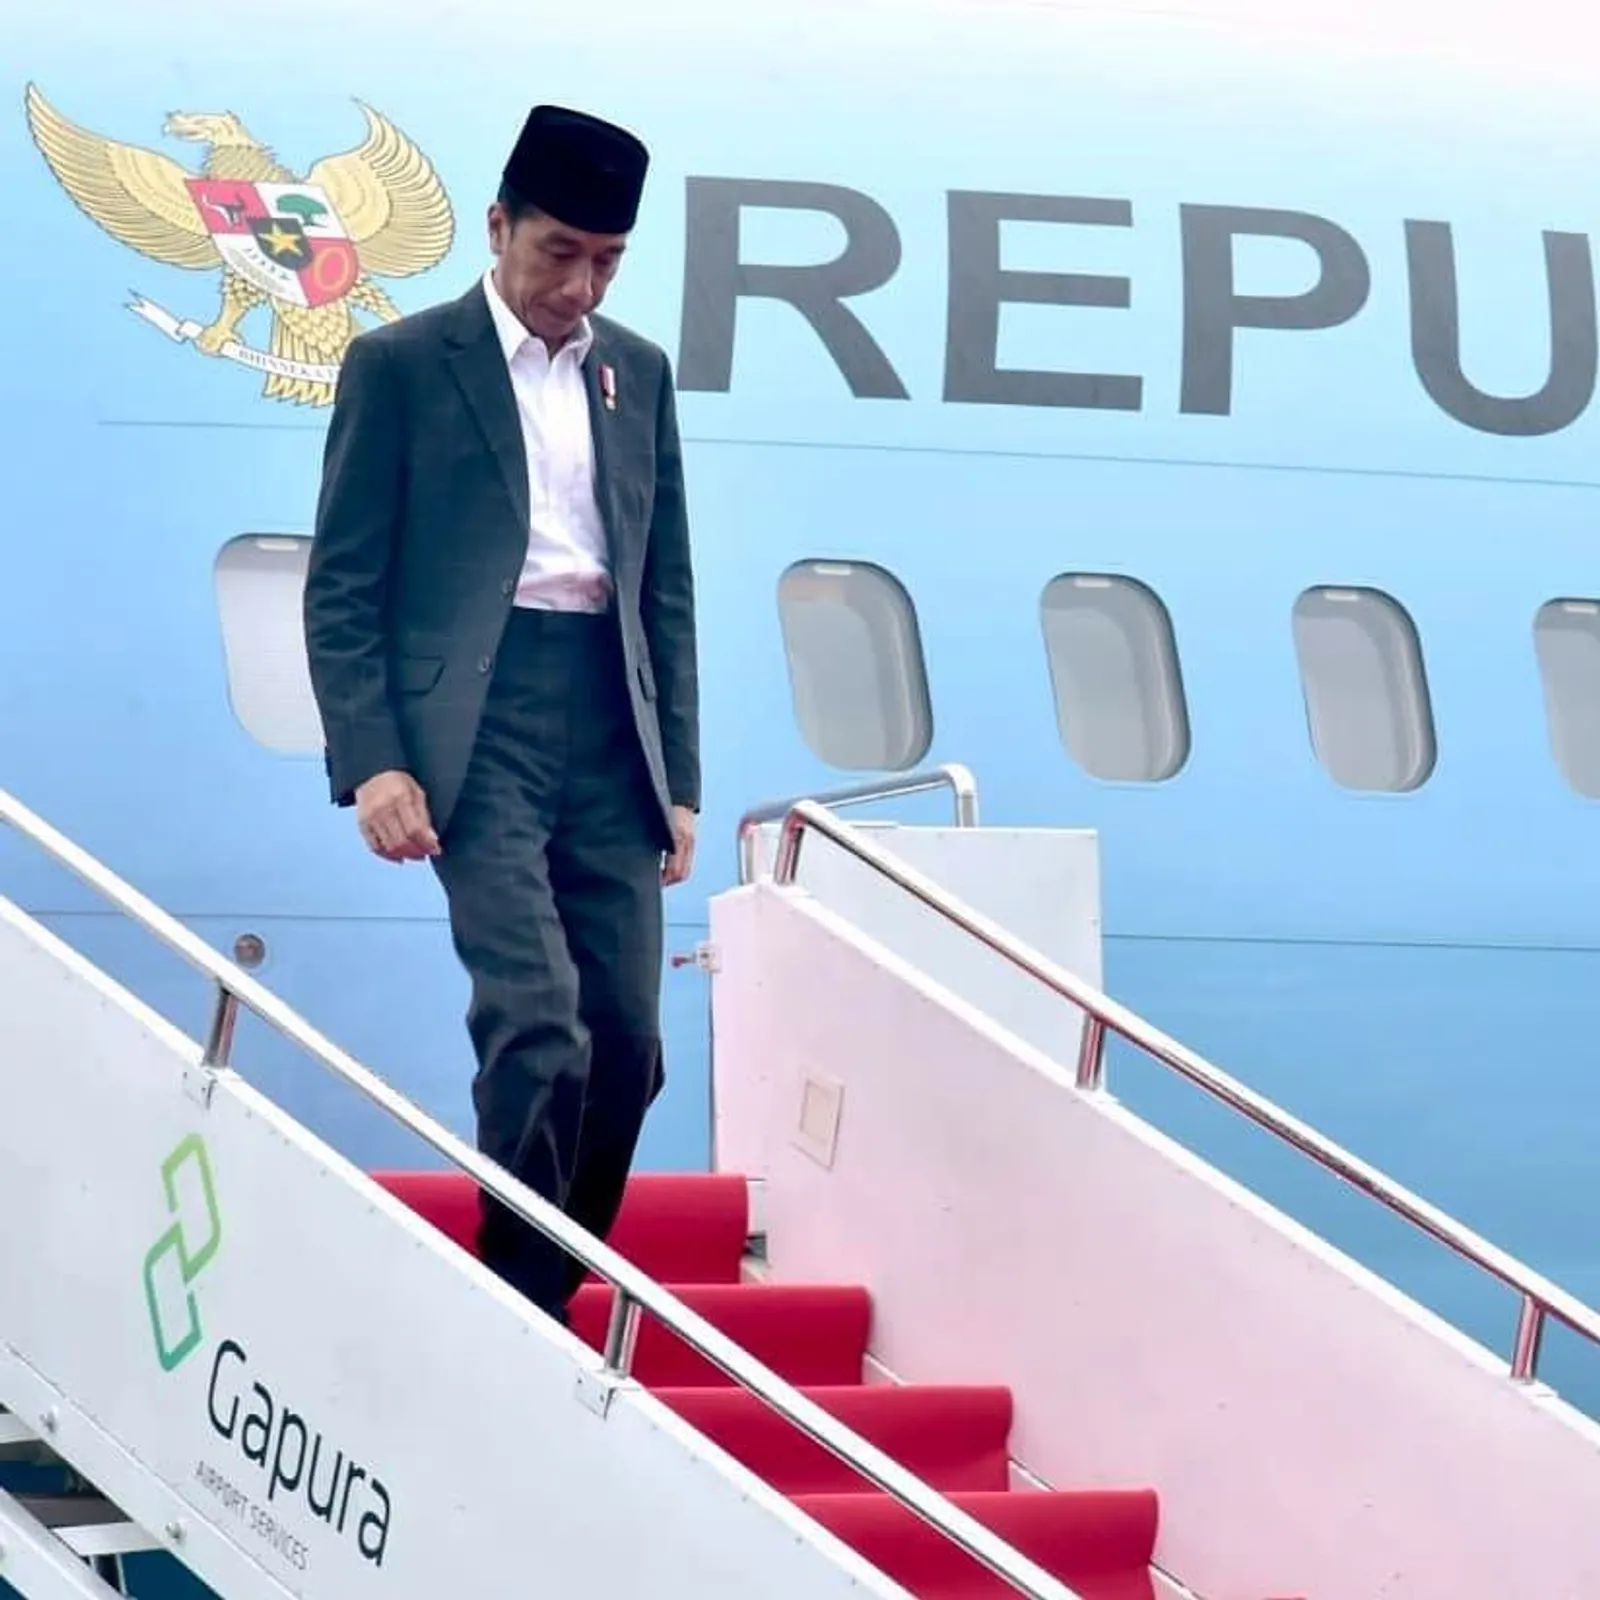 Terkait Kasus Perundungan AY, Ini Tanggapan Presiden Joko Widodo